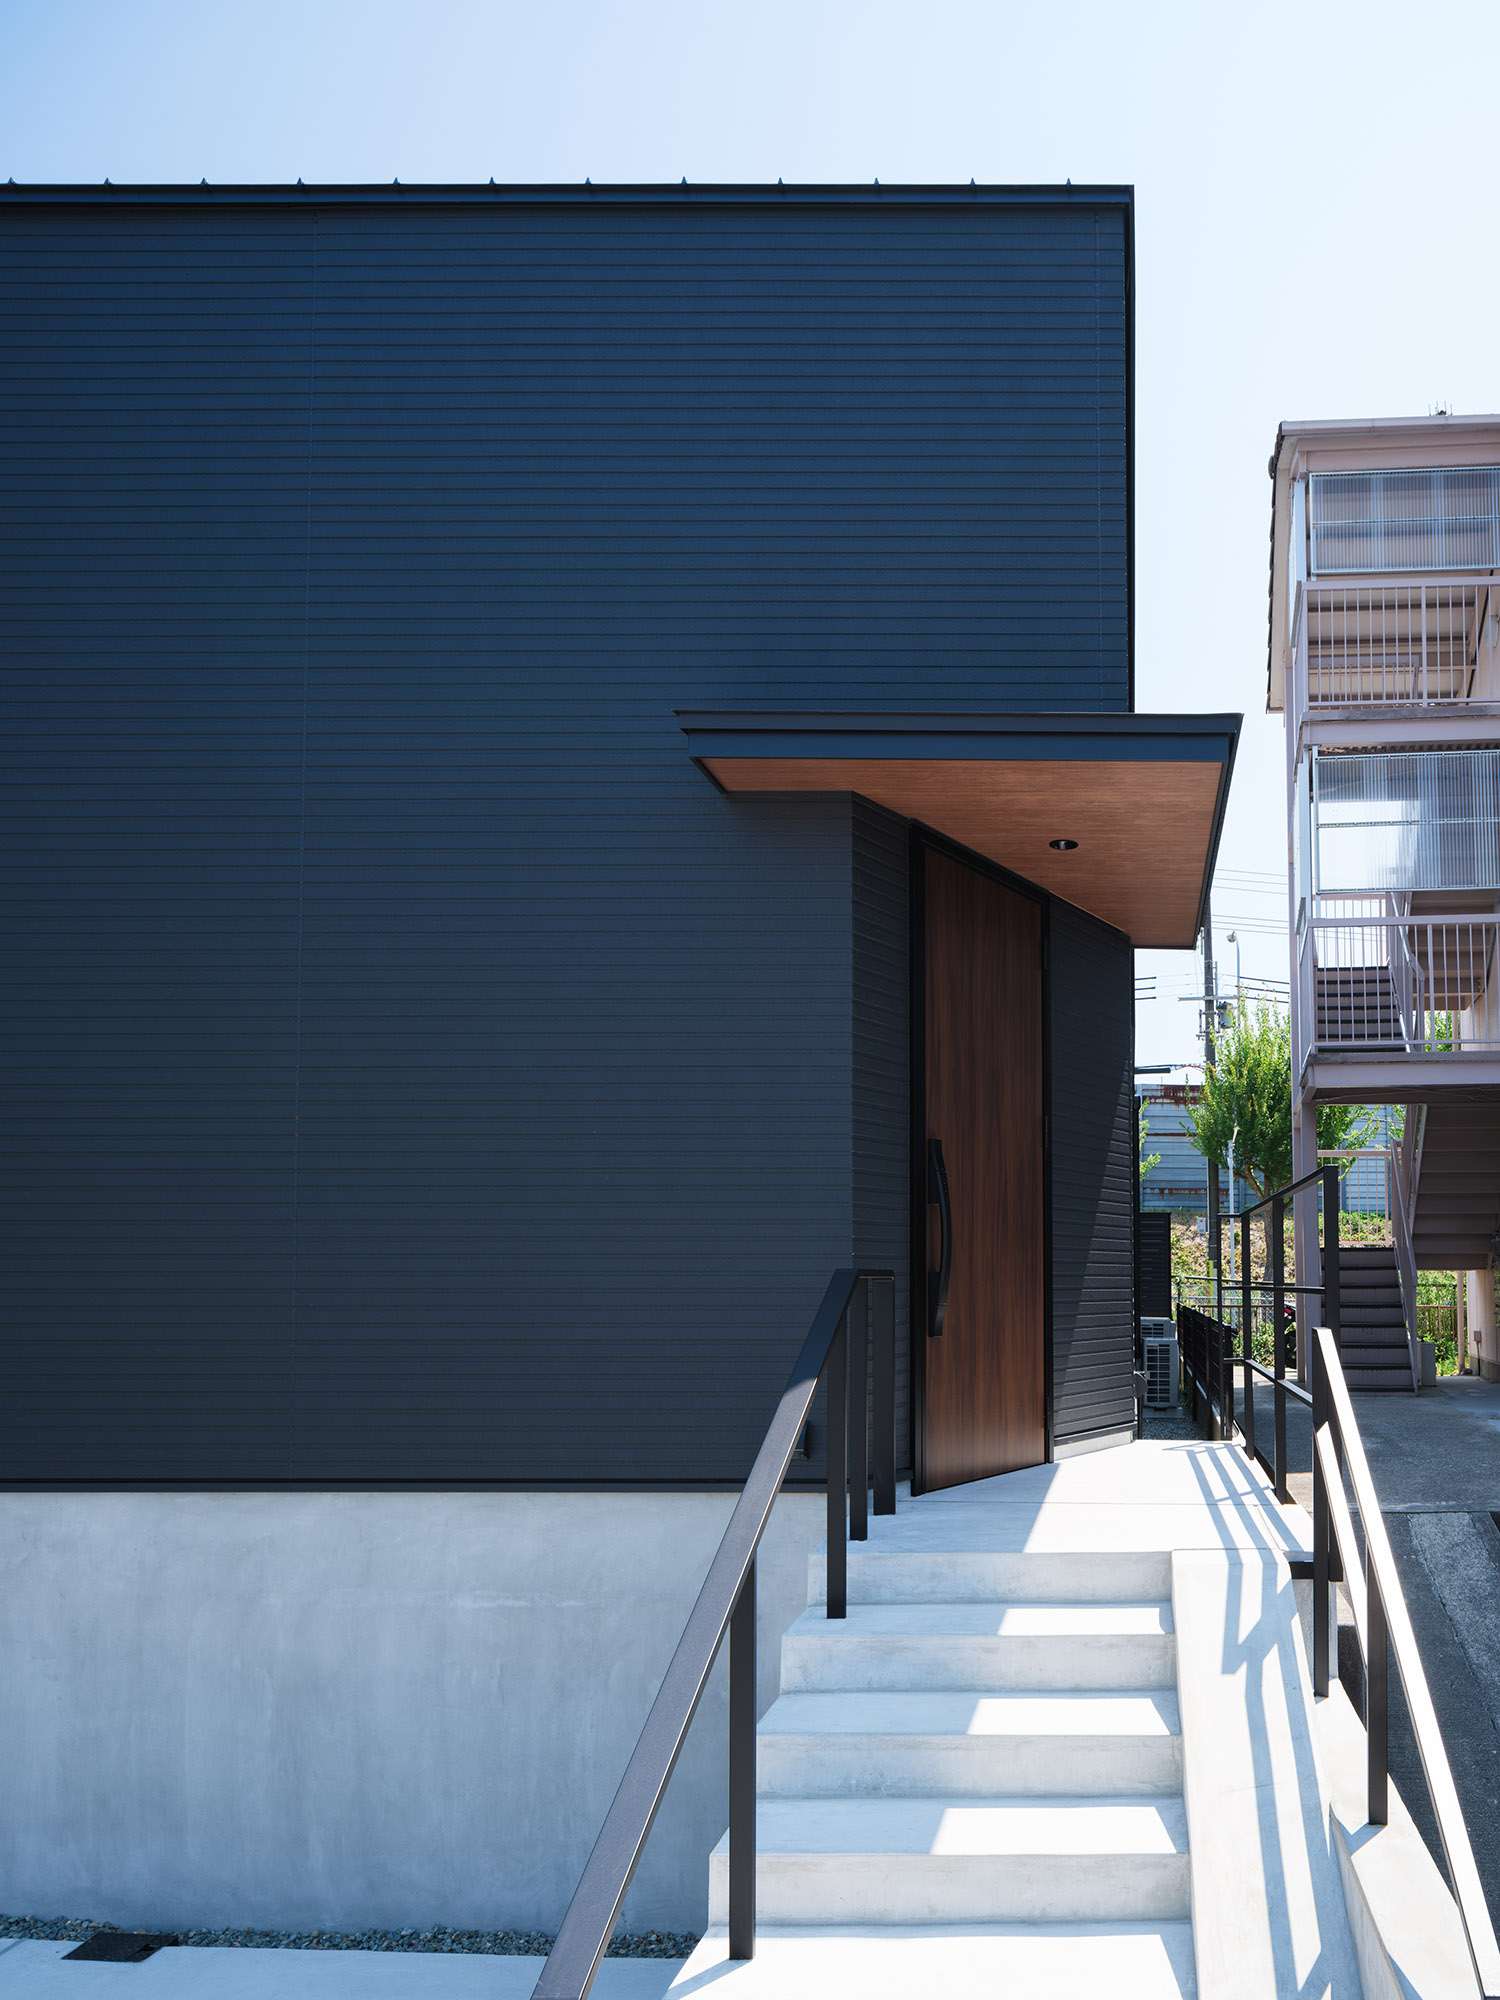 コンクリートの階段と黒い手すりがあるアプローチと、木目の庇がある玄関ポーチ・デザイン住宅